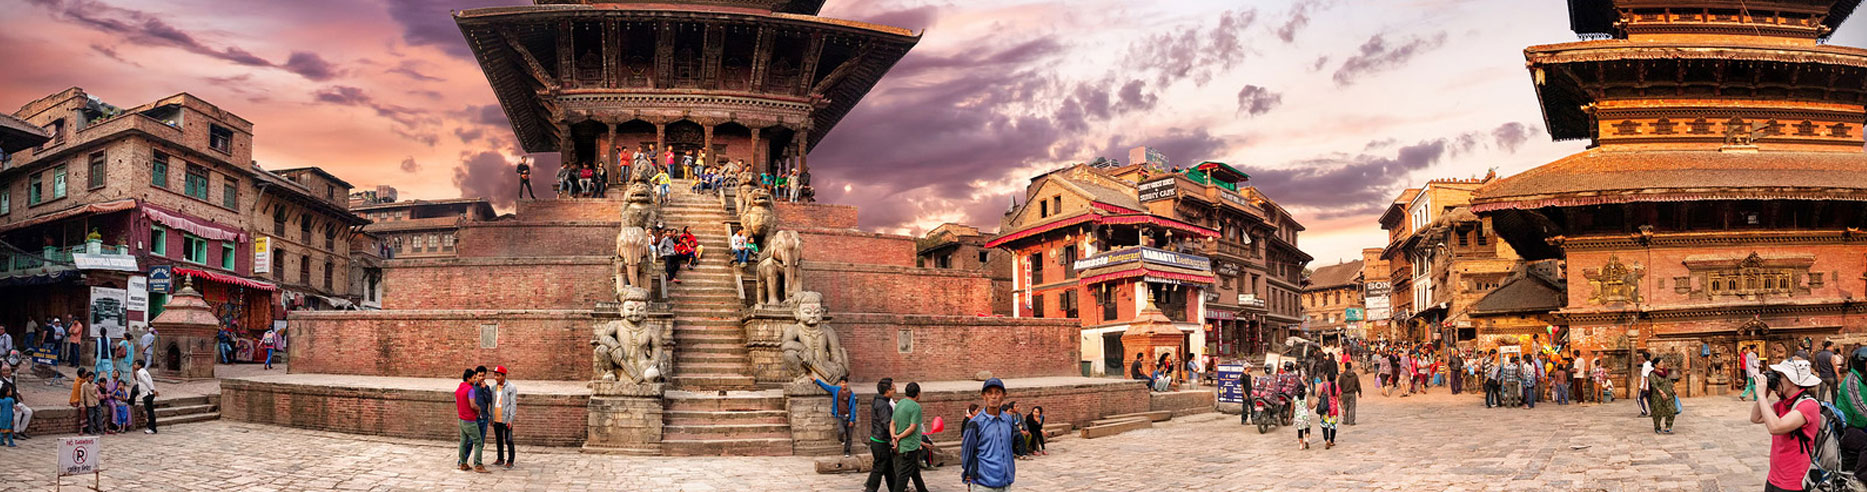 Gorakhpur Kathmandu Pokhara